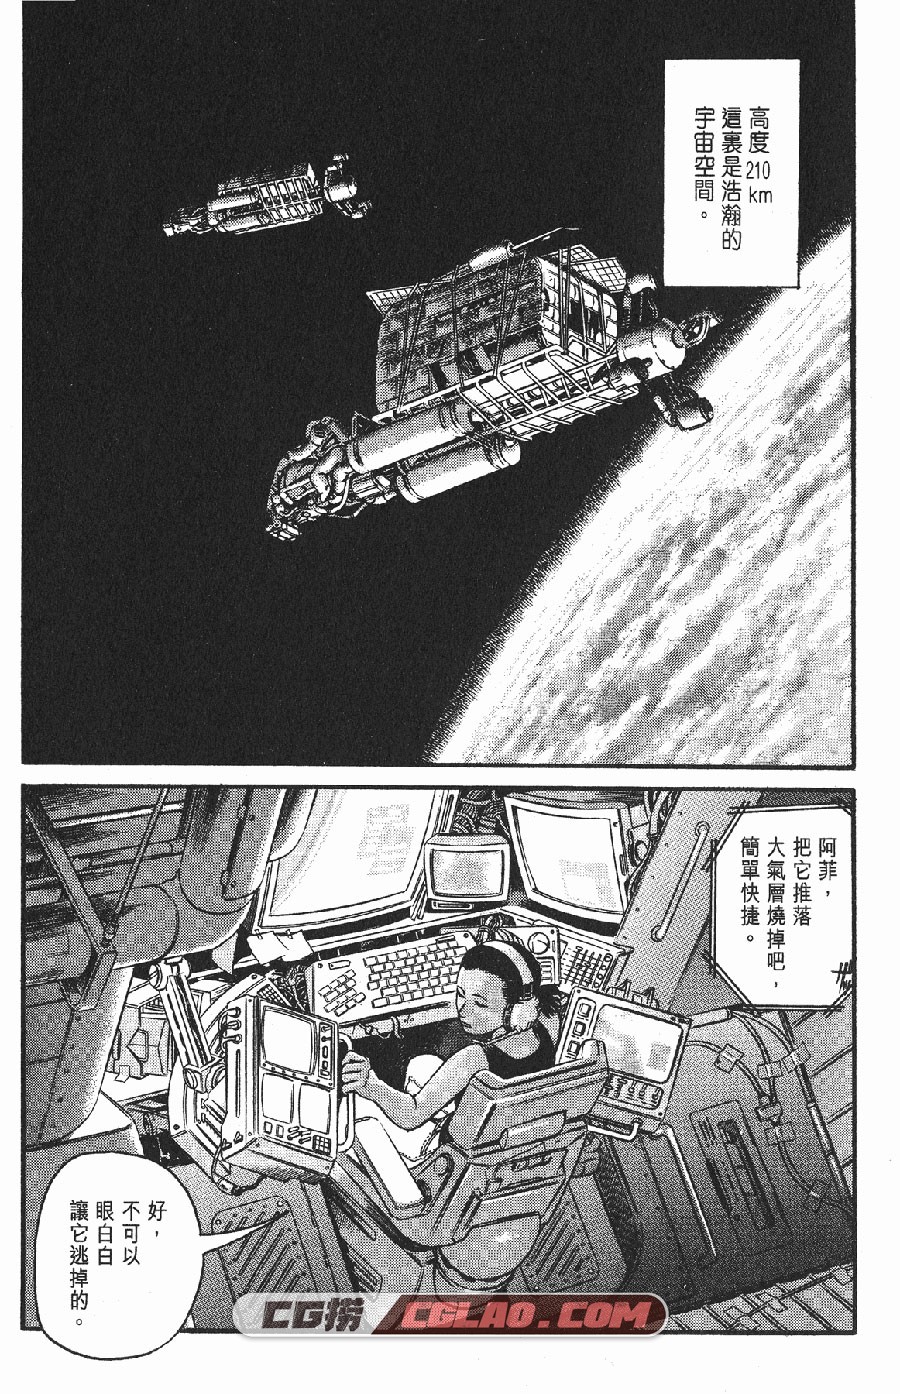 星空之旅 幸村诚 1-4卷 漫画全部完结下载 百度网盘,_NASE01-_0004.jpg